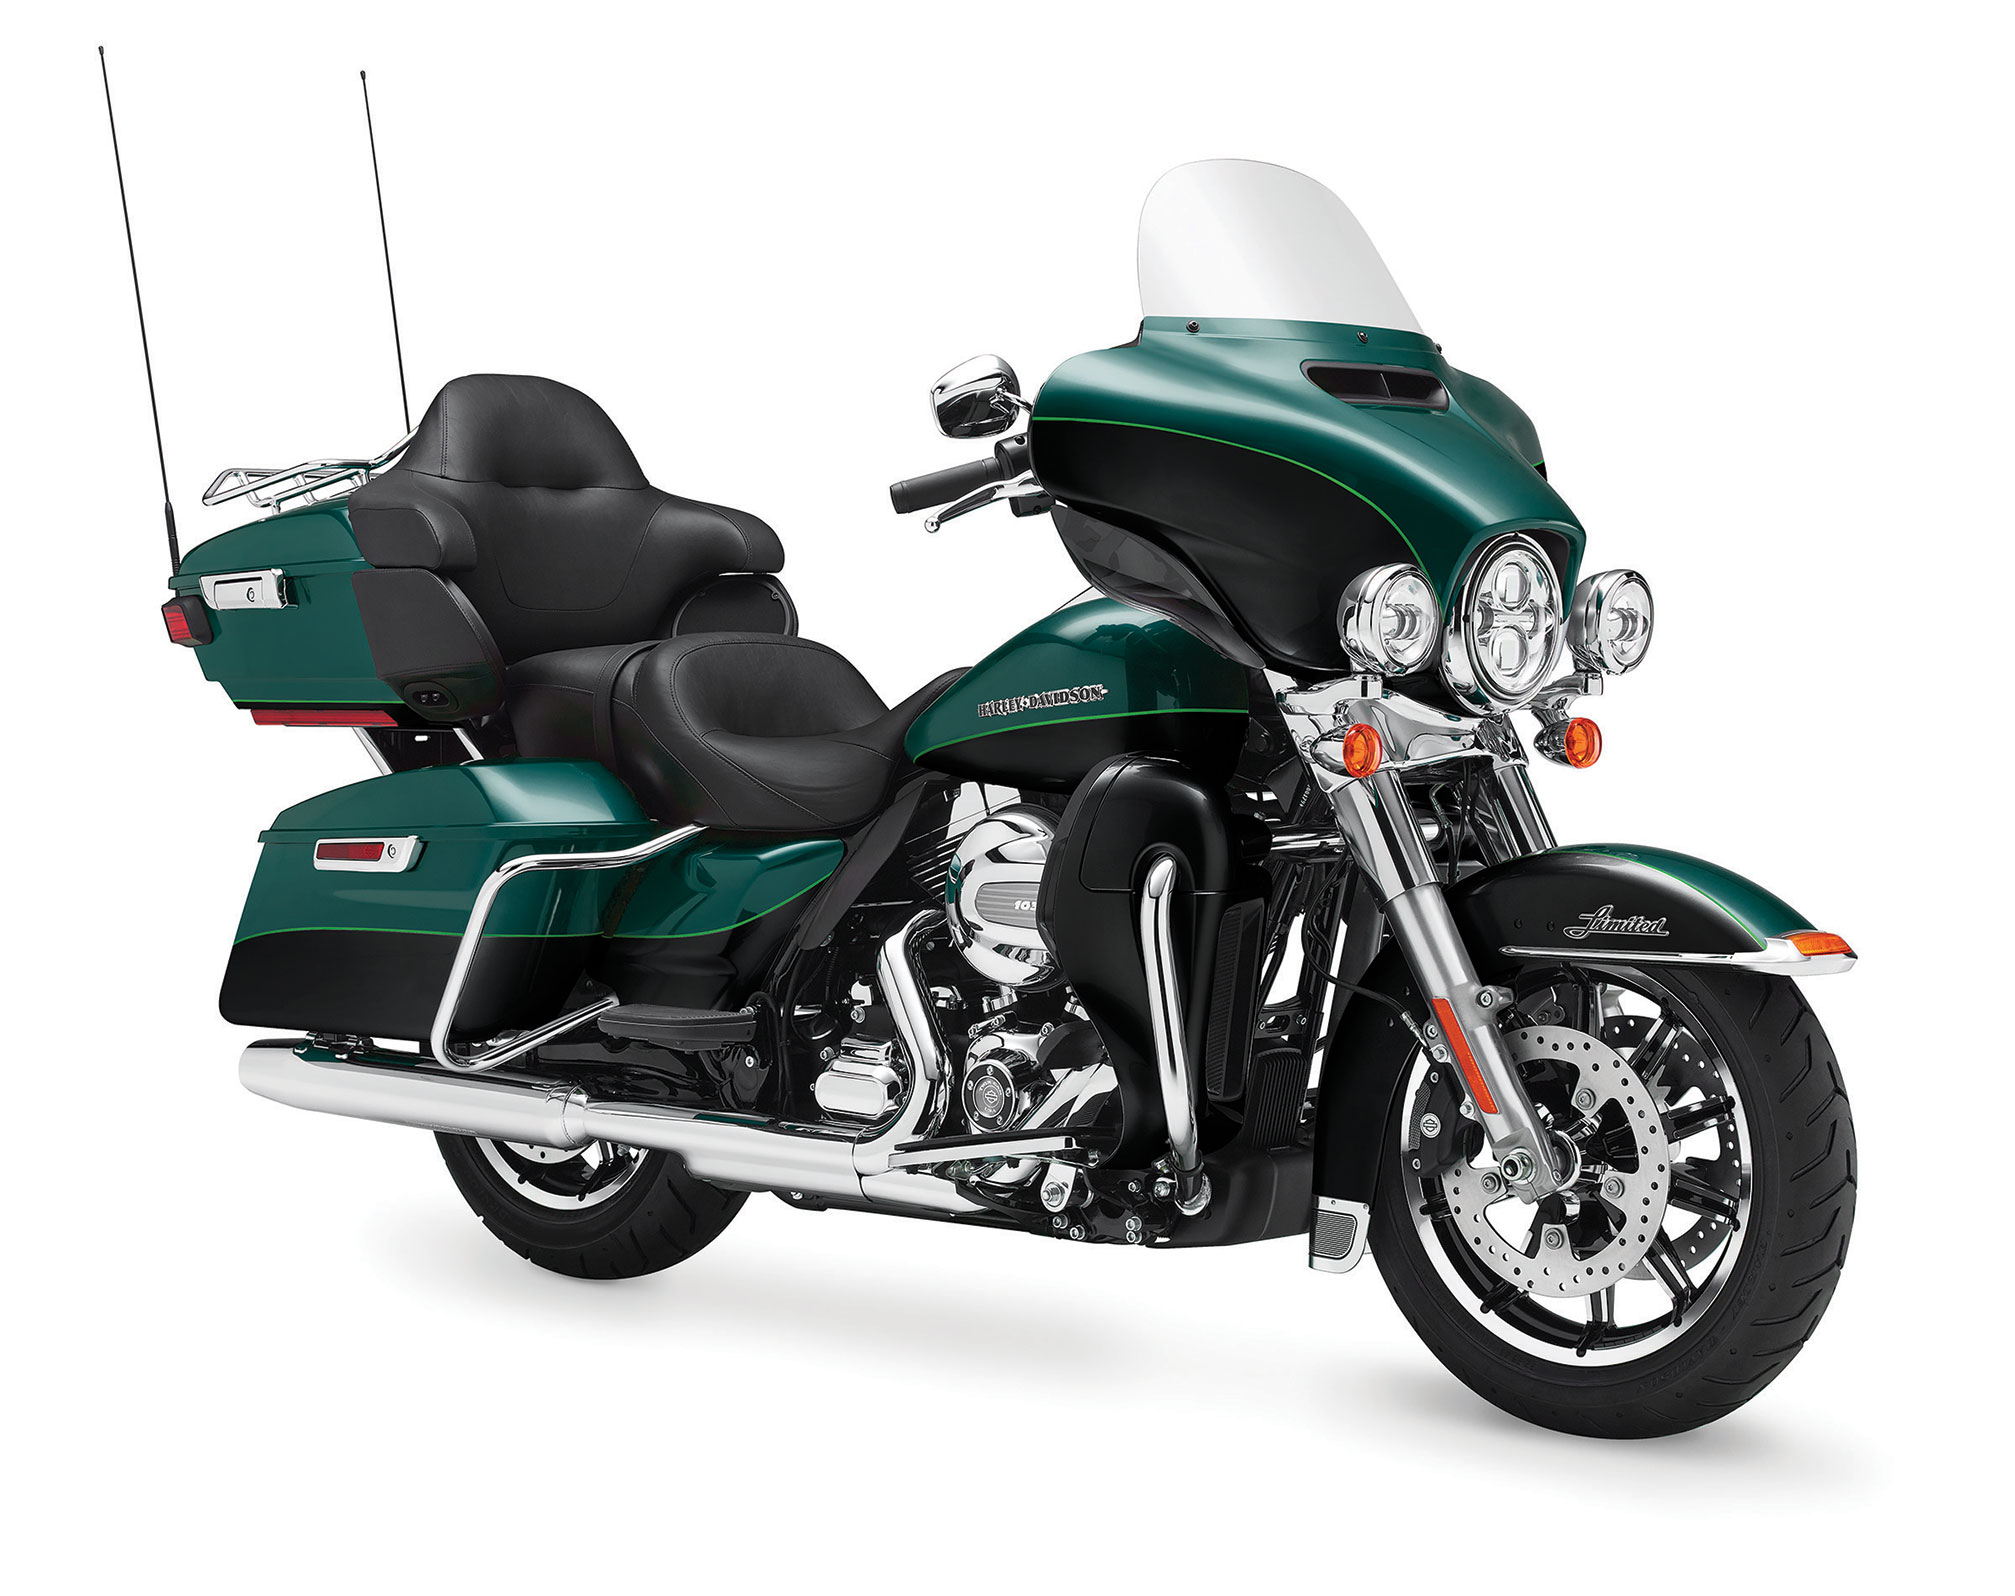 2015 Harley Davidson Flhtk Electra Glide Ultra Limited Review